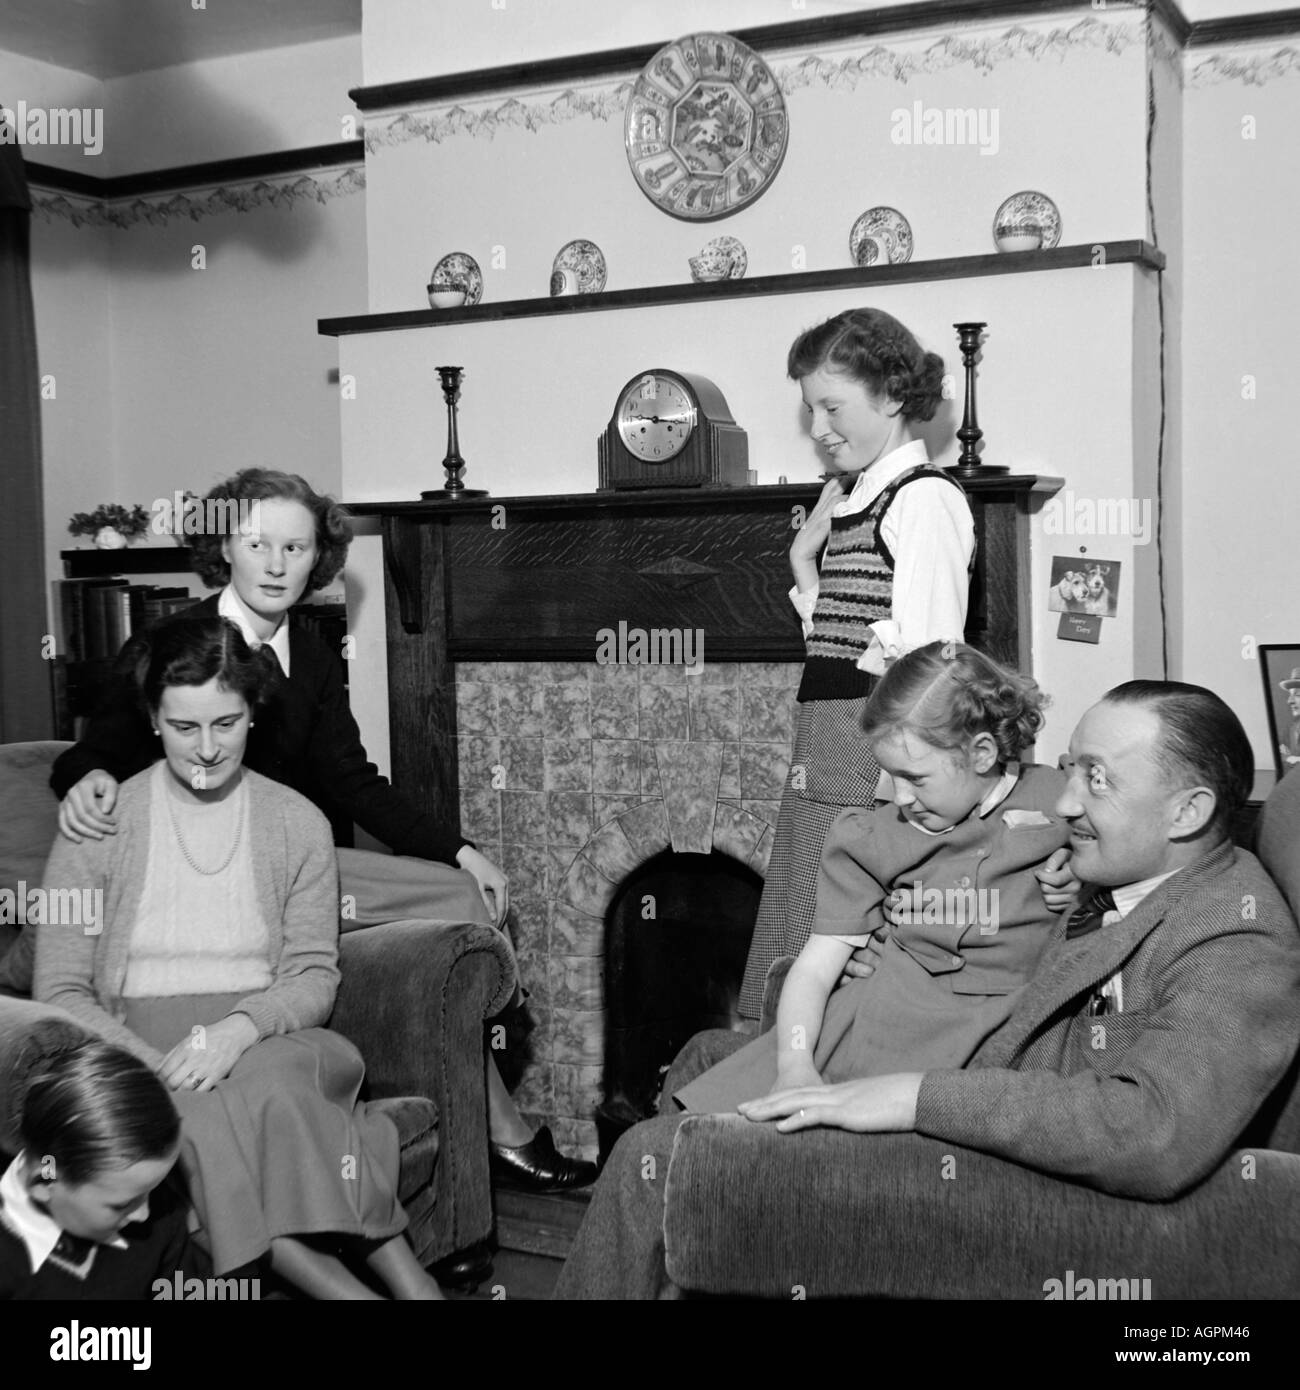 Vecchio VINTAGE IN BIANCO E NERO DI FAMIGLIA fotografia istantanea di madre e padre di quattro figli rilassante nel salotto di casa 1950 Foto Stock